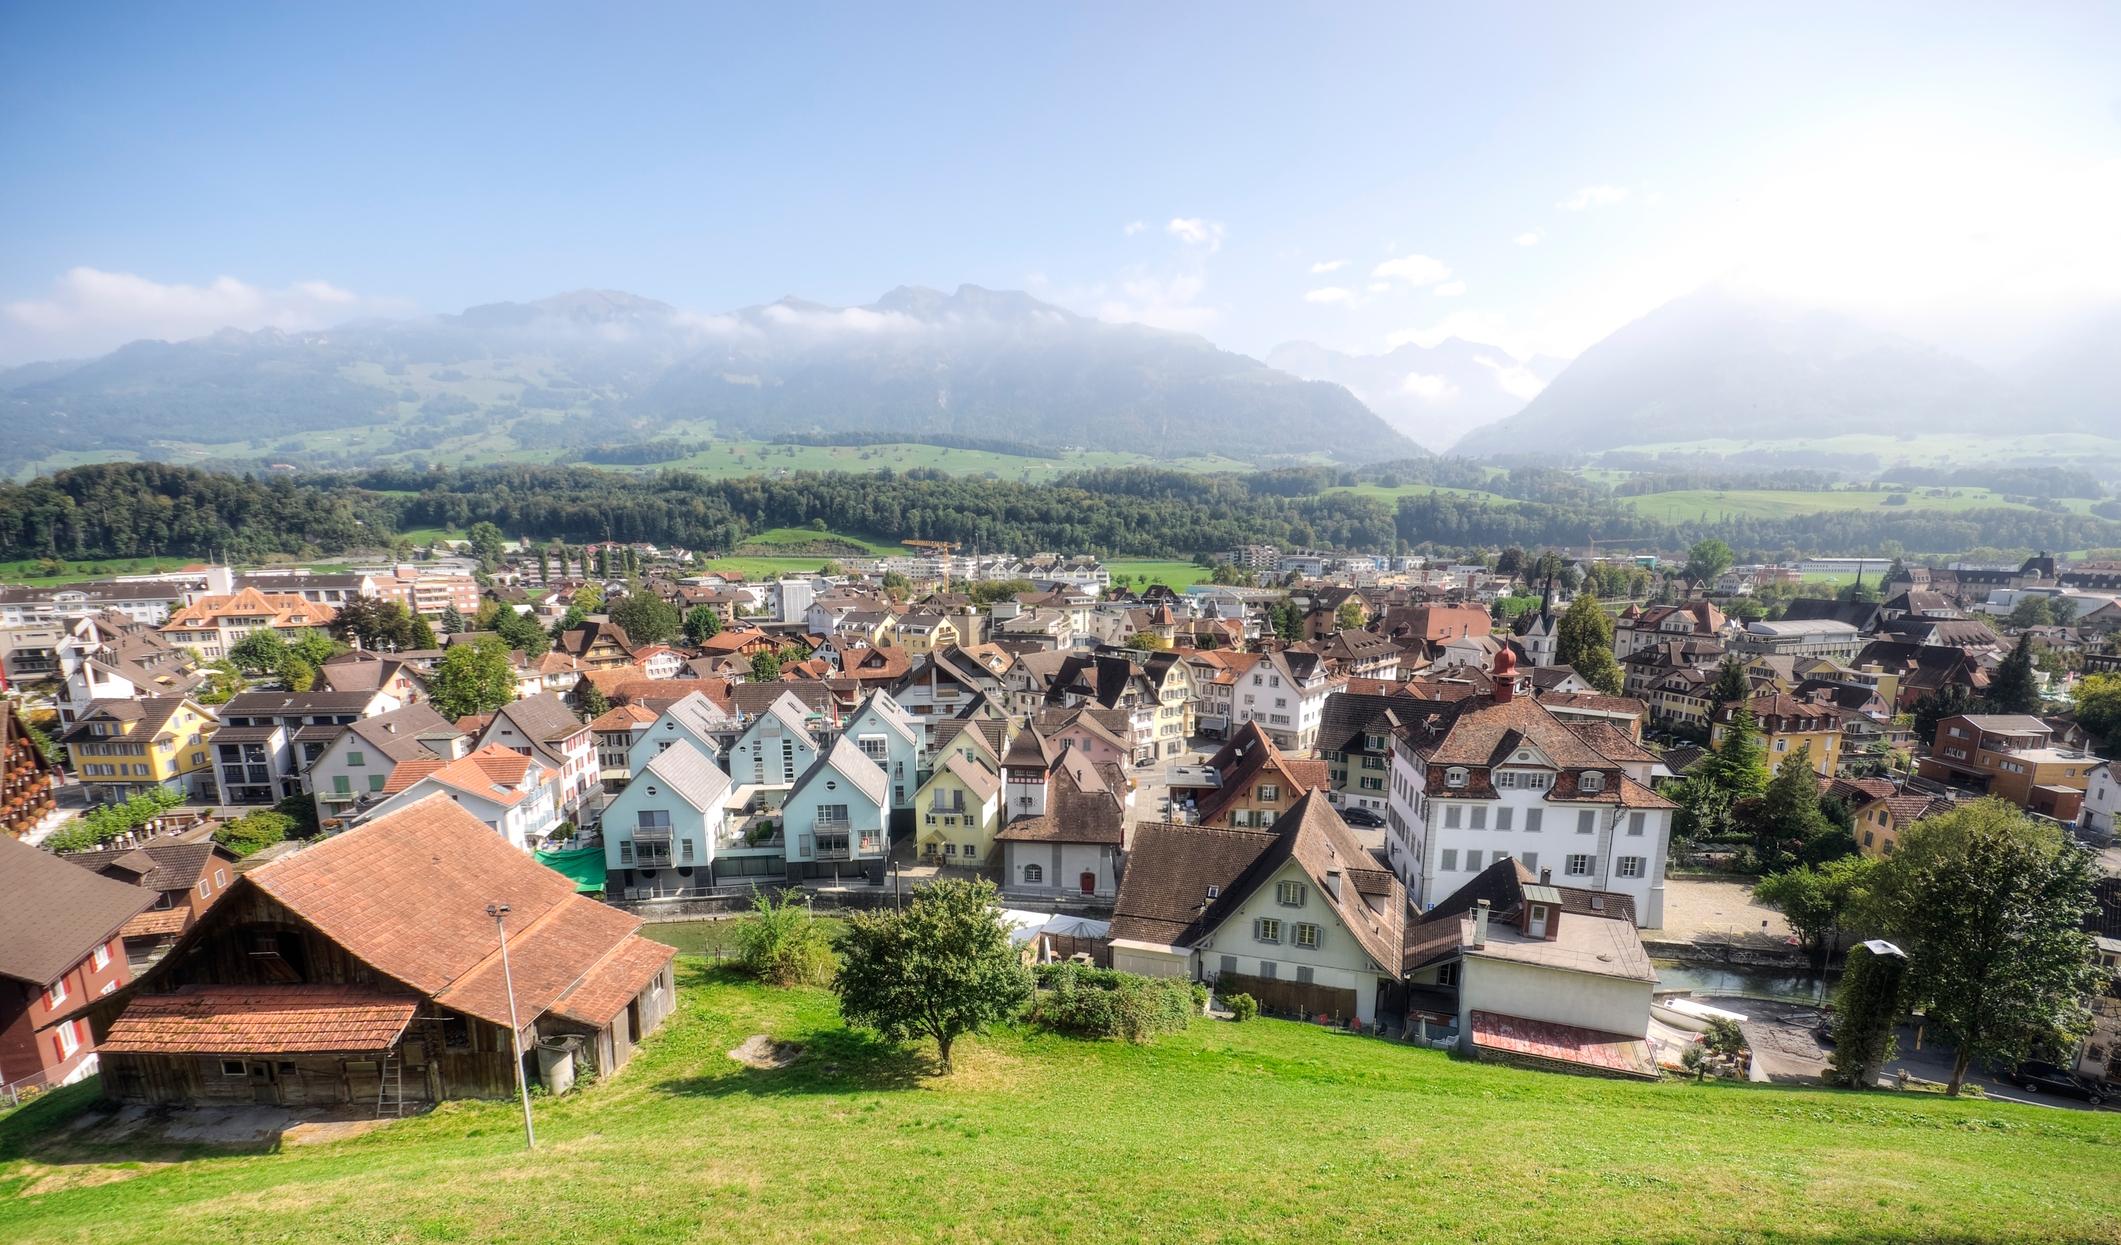  Dorf Sarnen - Steuern in der Schweiz